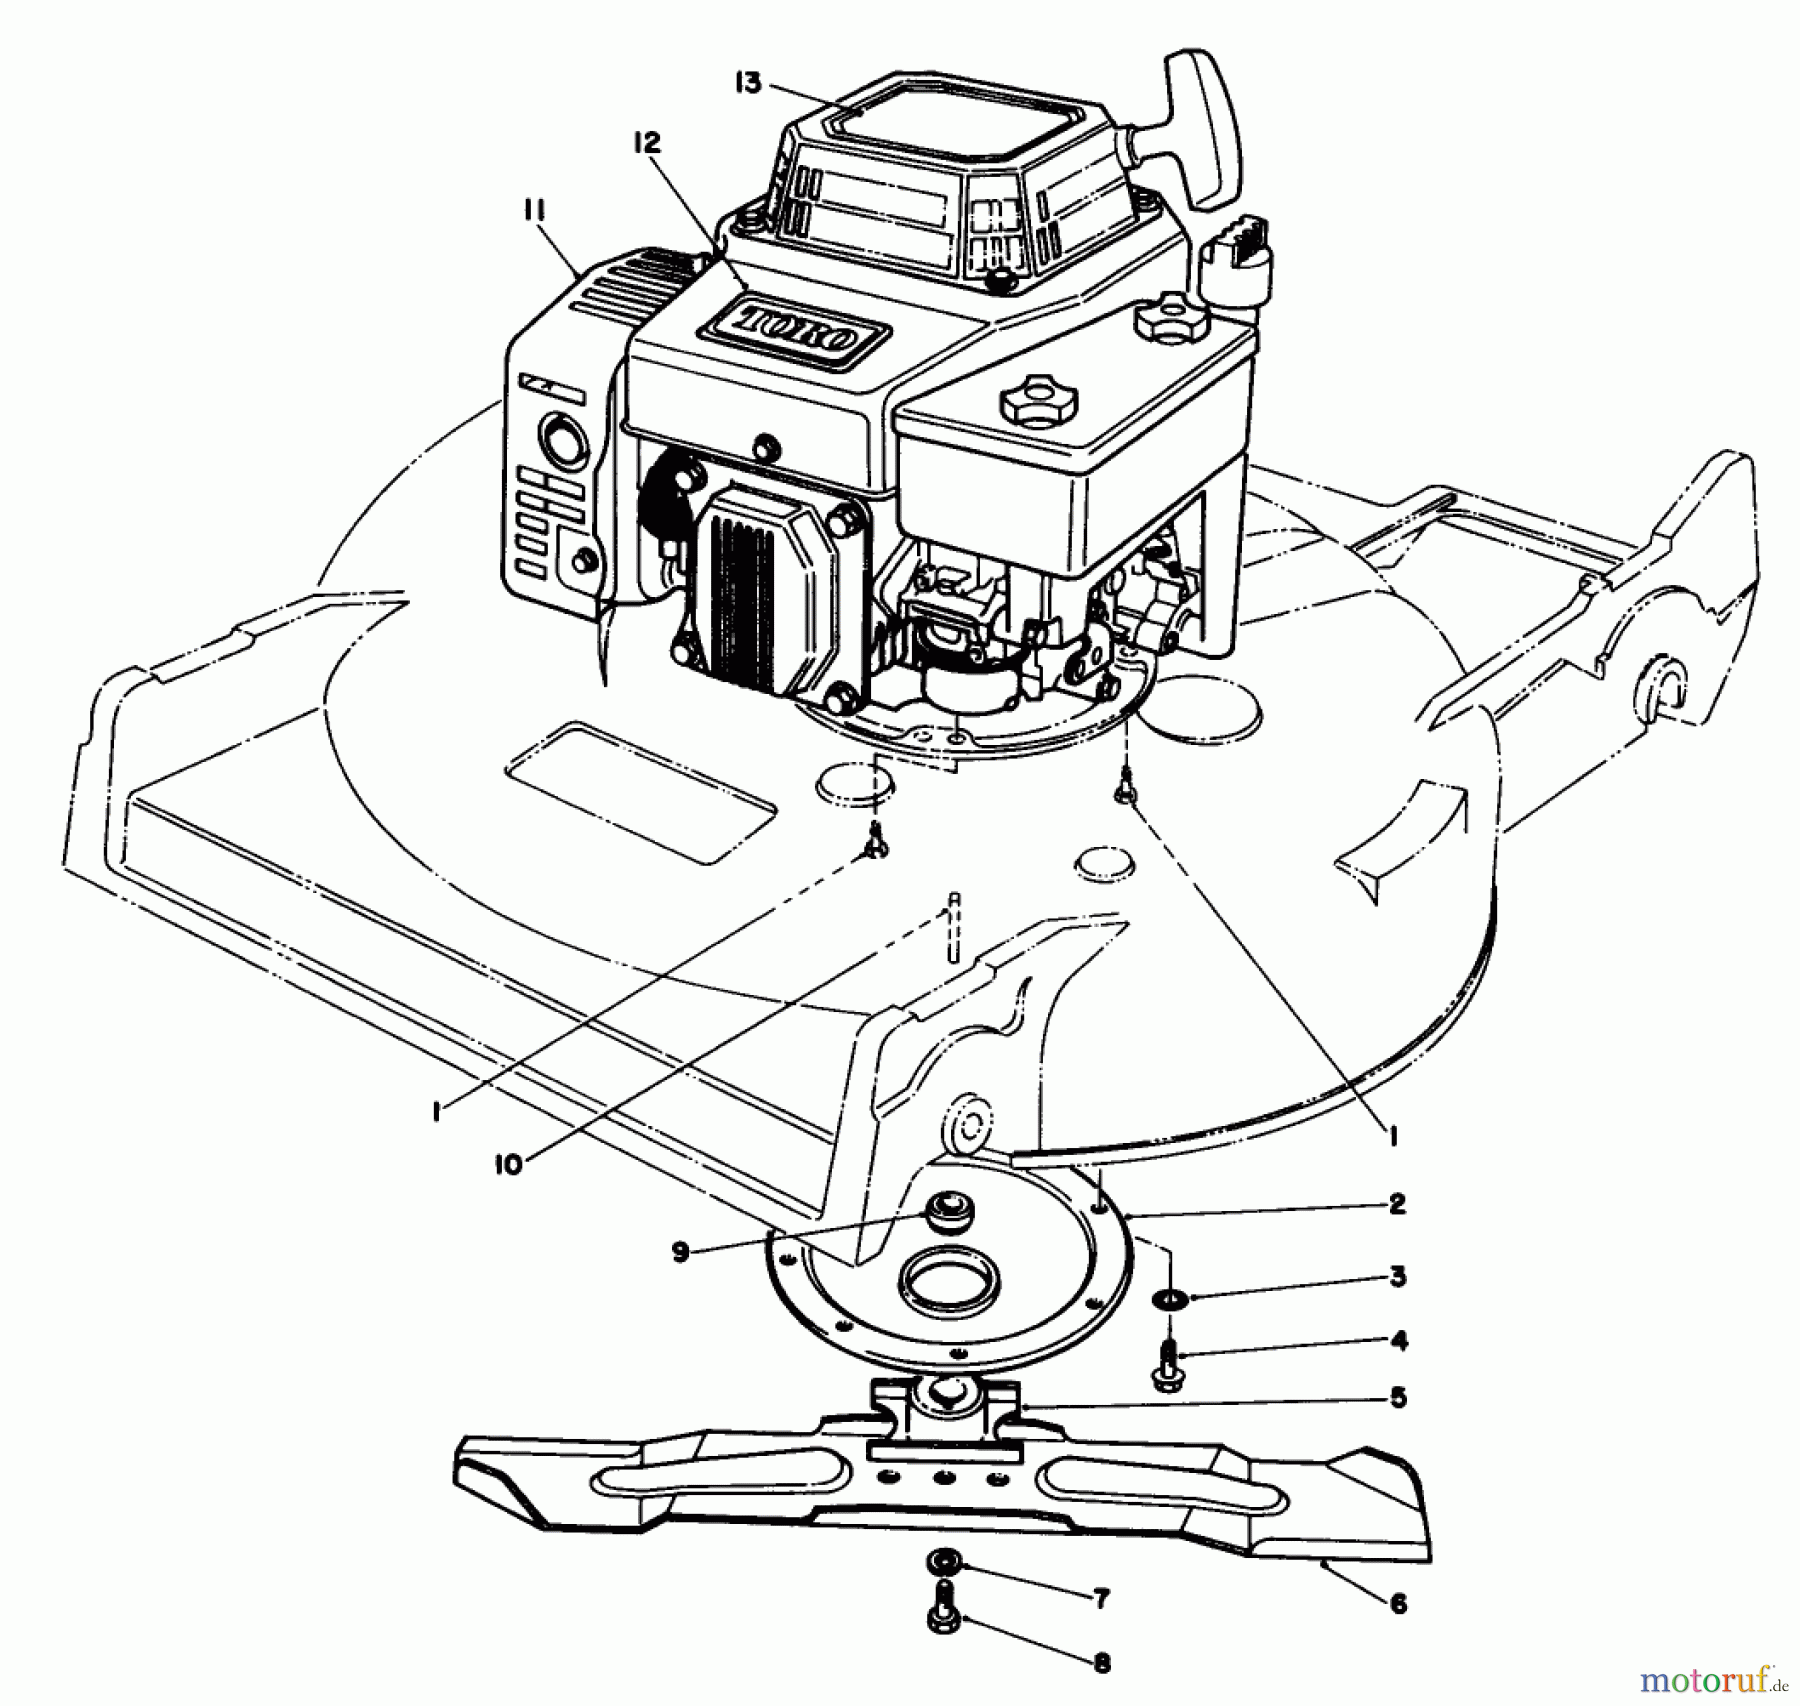  Toro Neu Mowers, Walk-Behind Seite 2 22525 - Toro Lawnmower, 1987 (7000001-7999999) ENGINE ASSEMBLY (MODEL NO. 22525)